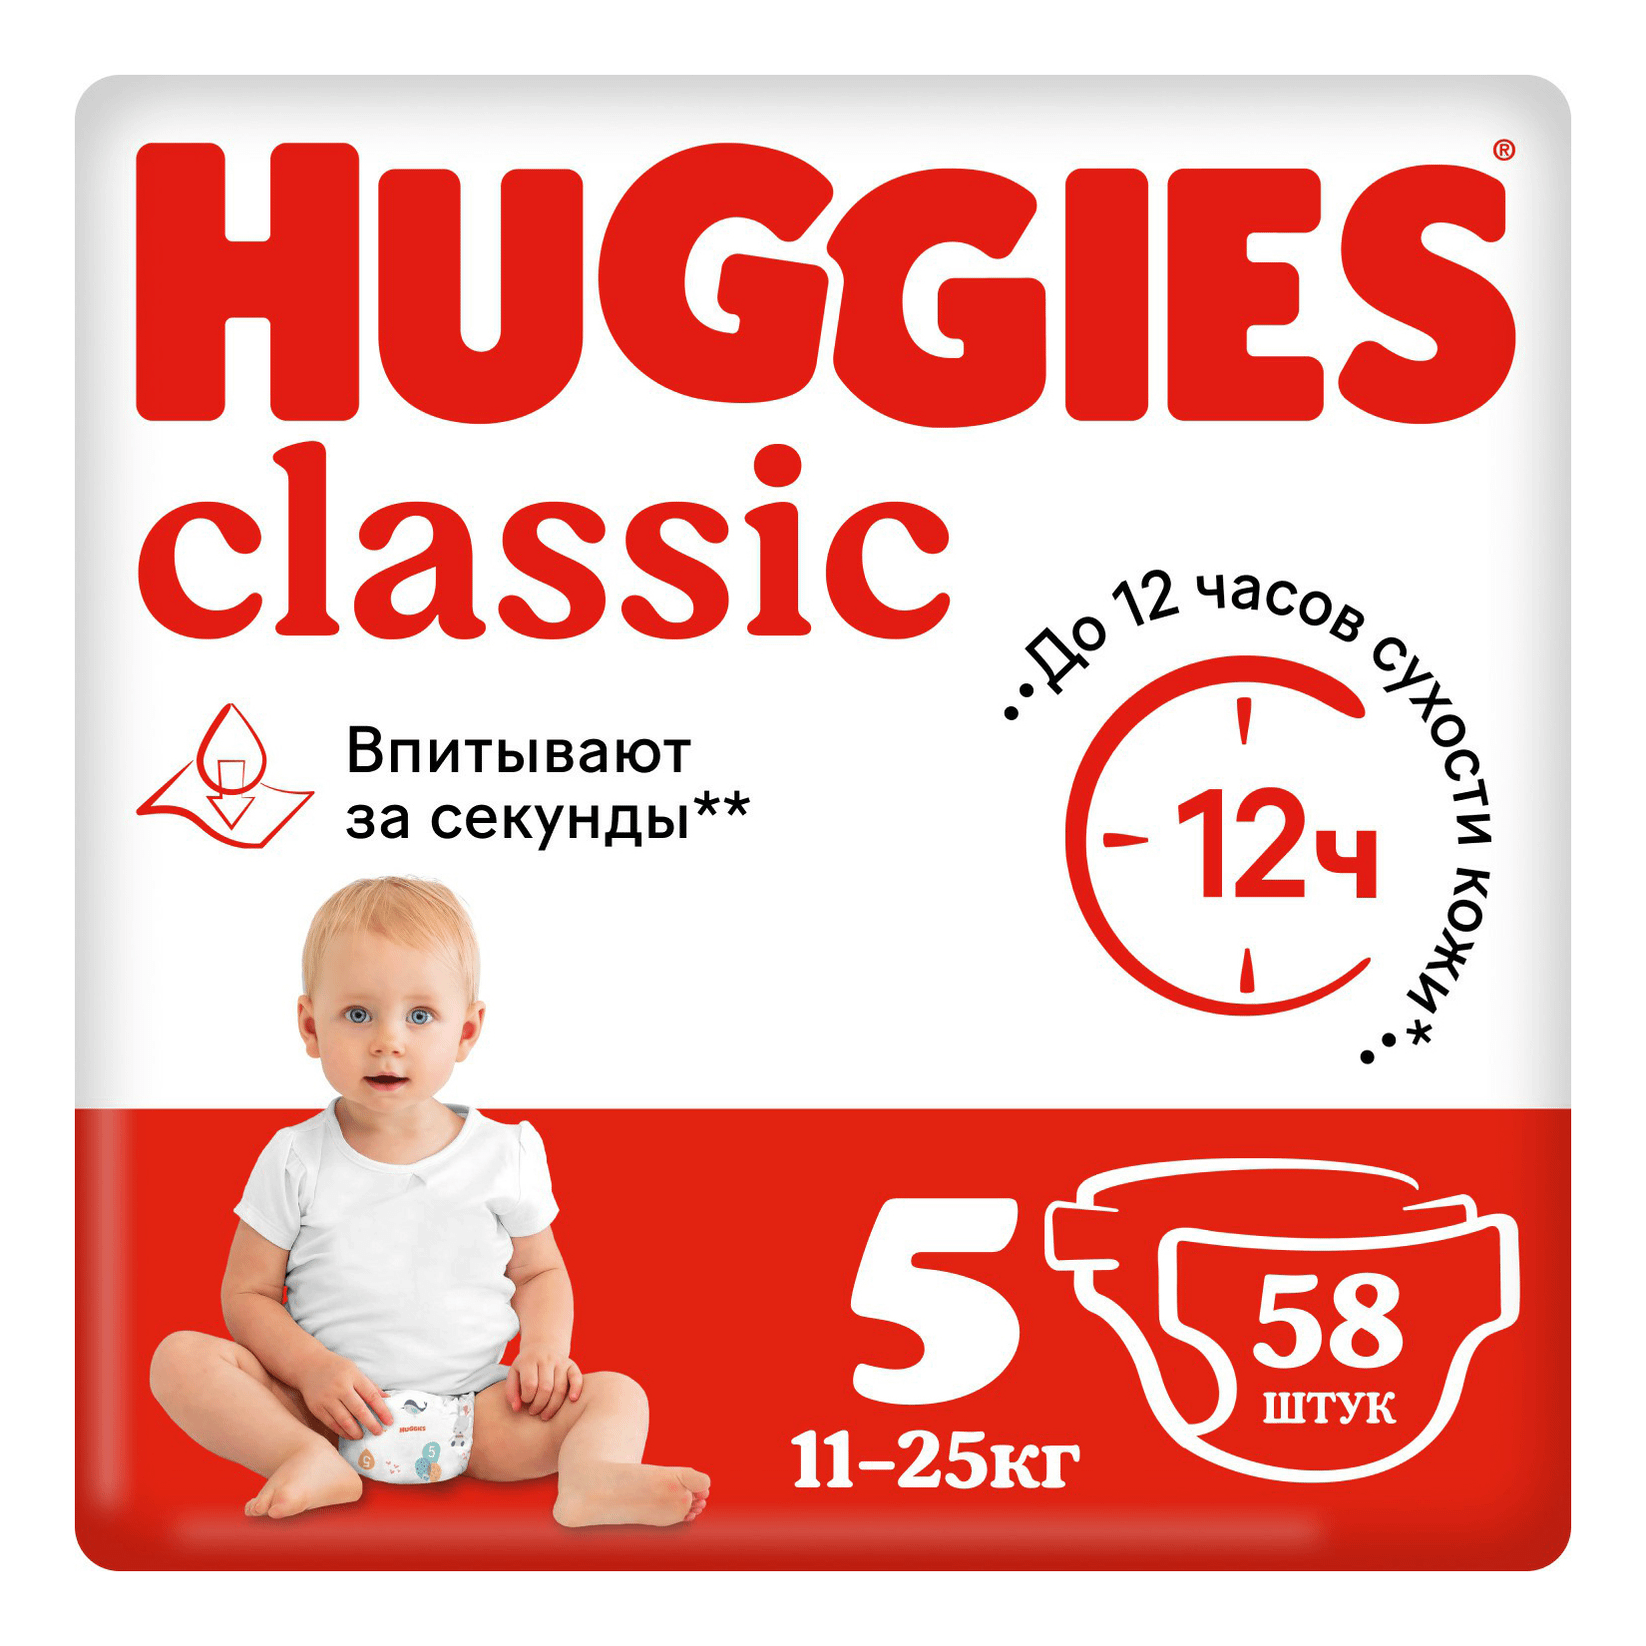 Подгузники Huggies Classic 5 (11-25 кг), 58 шт подгузники huggies classic 4 7 18 кг 14 шт